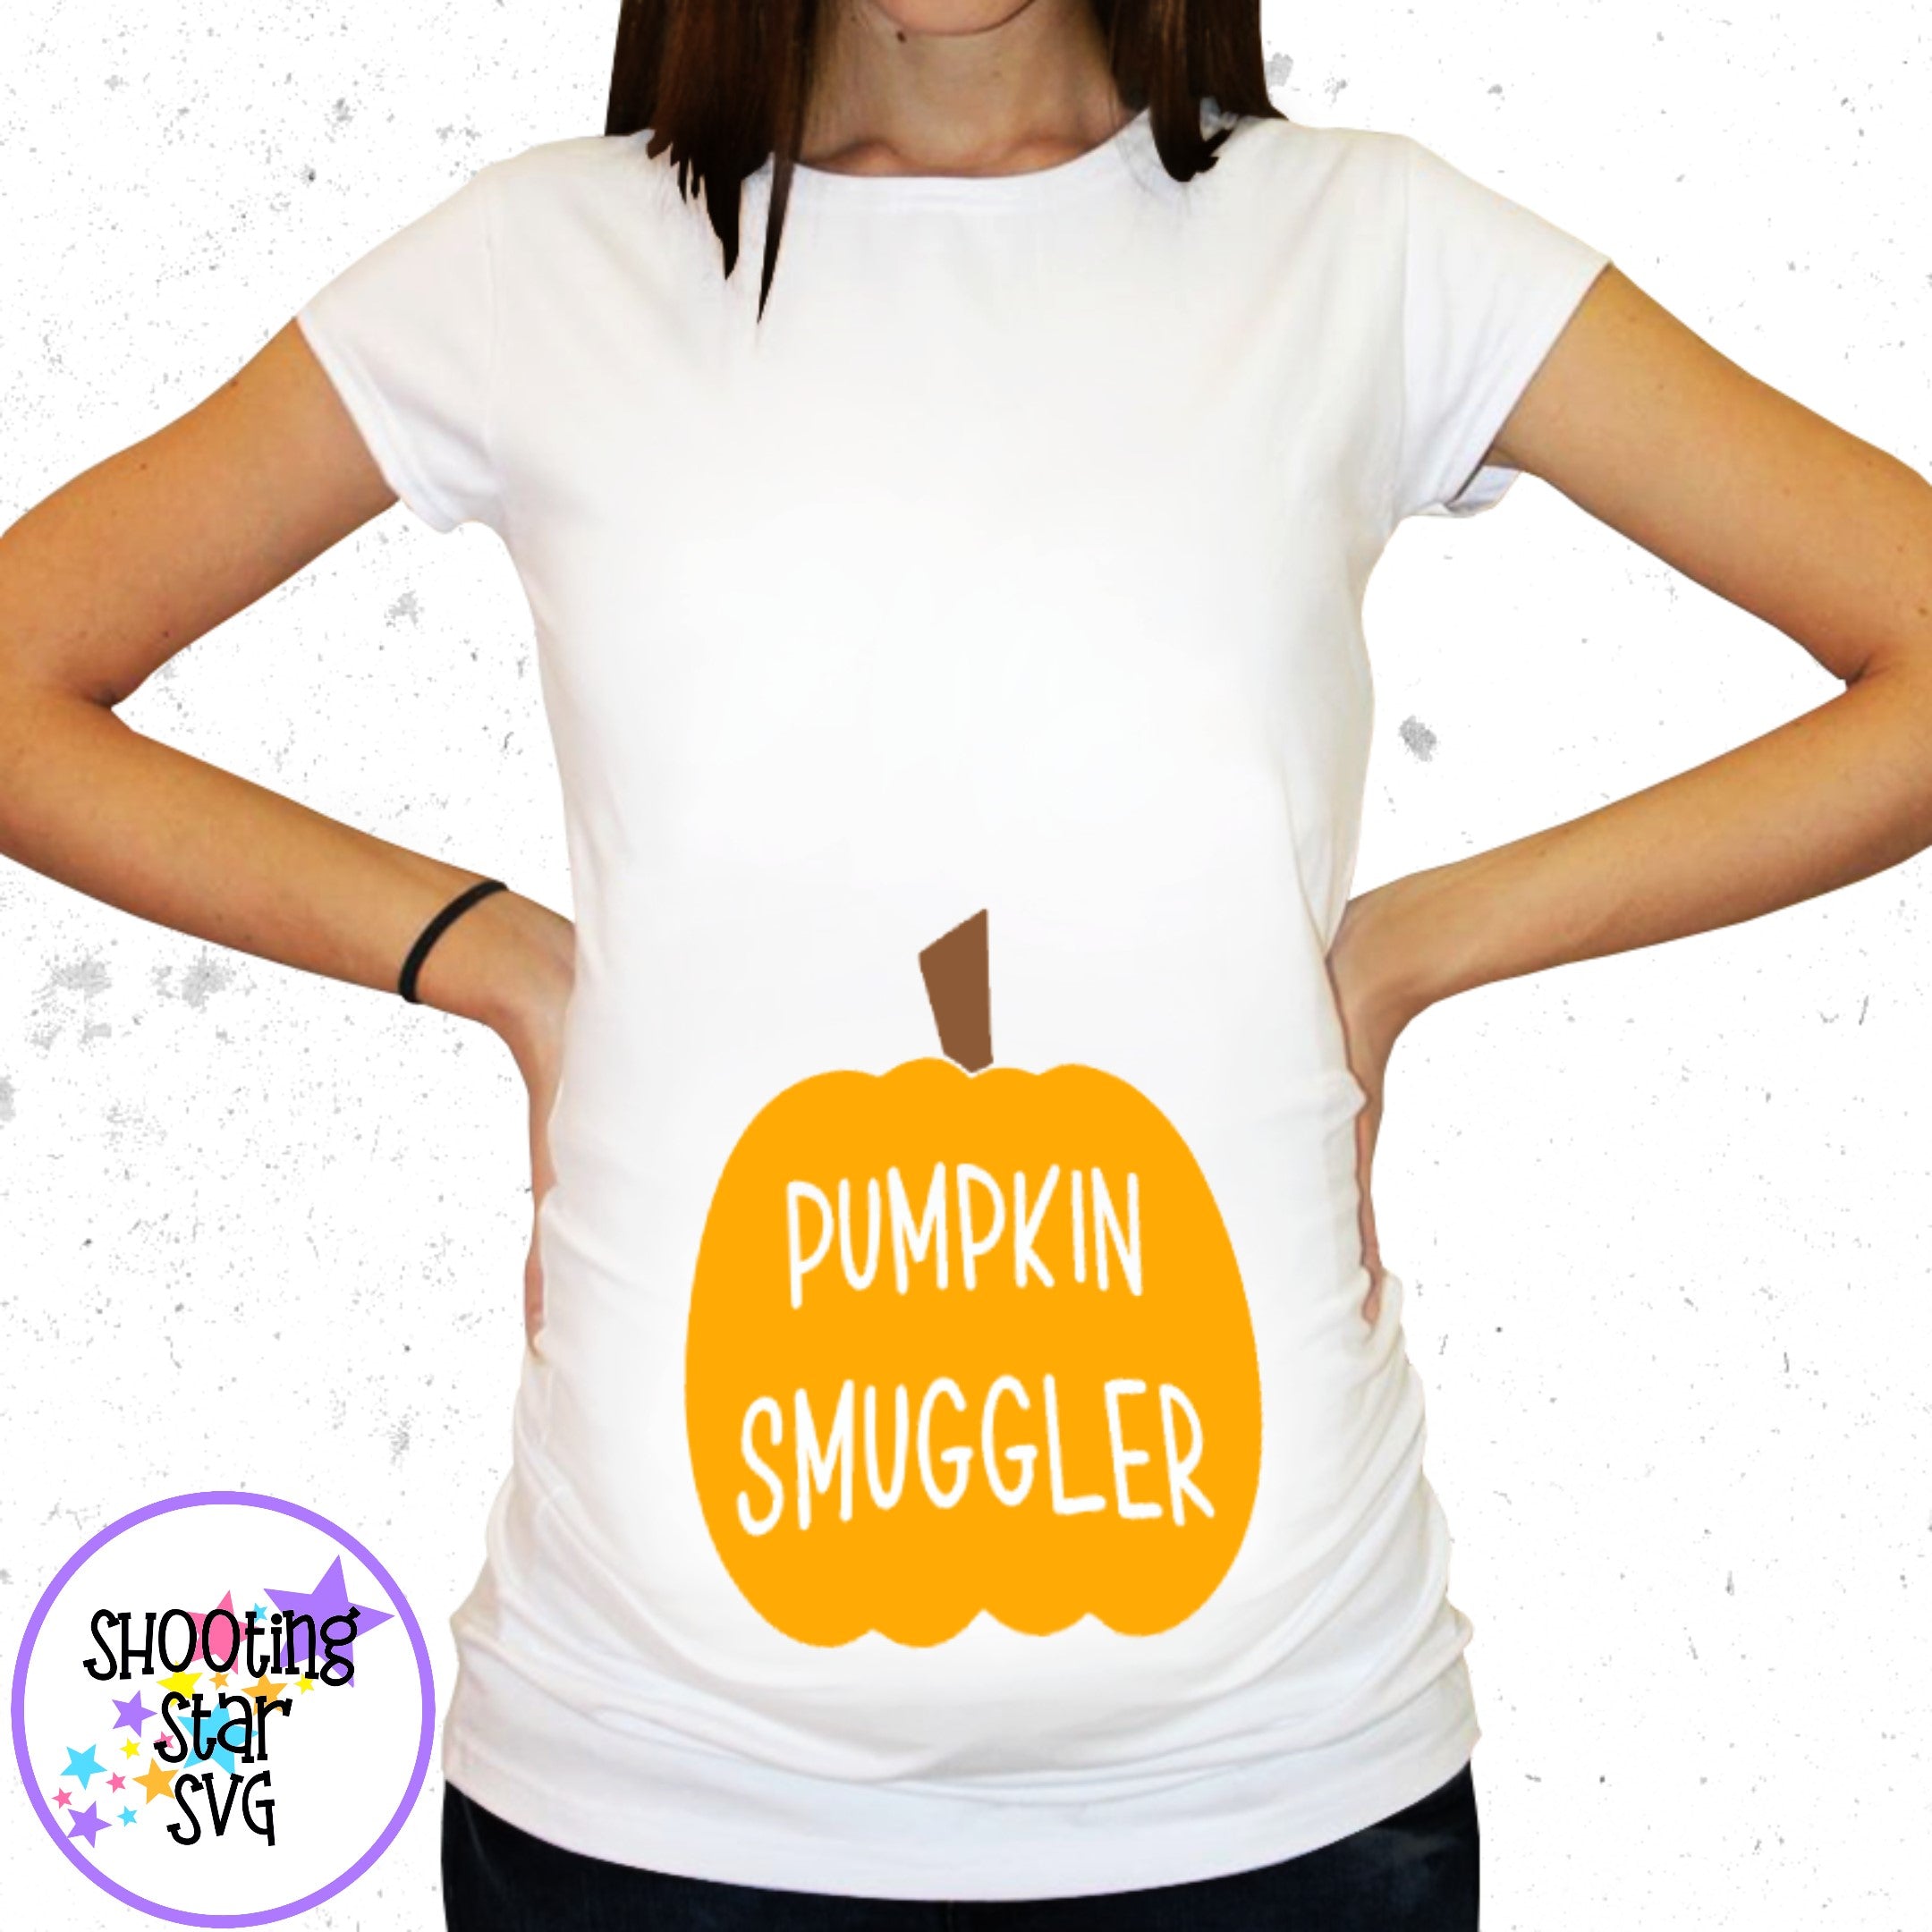 Pumpkin Smuggler - Pregnancy SVG - Maternity SVG